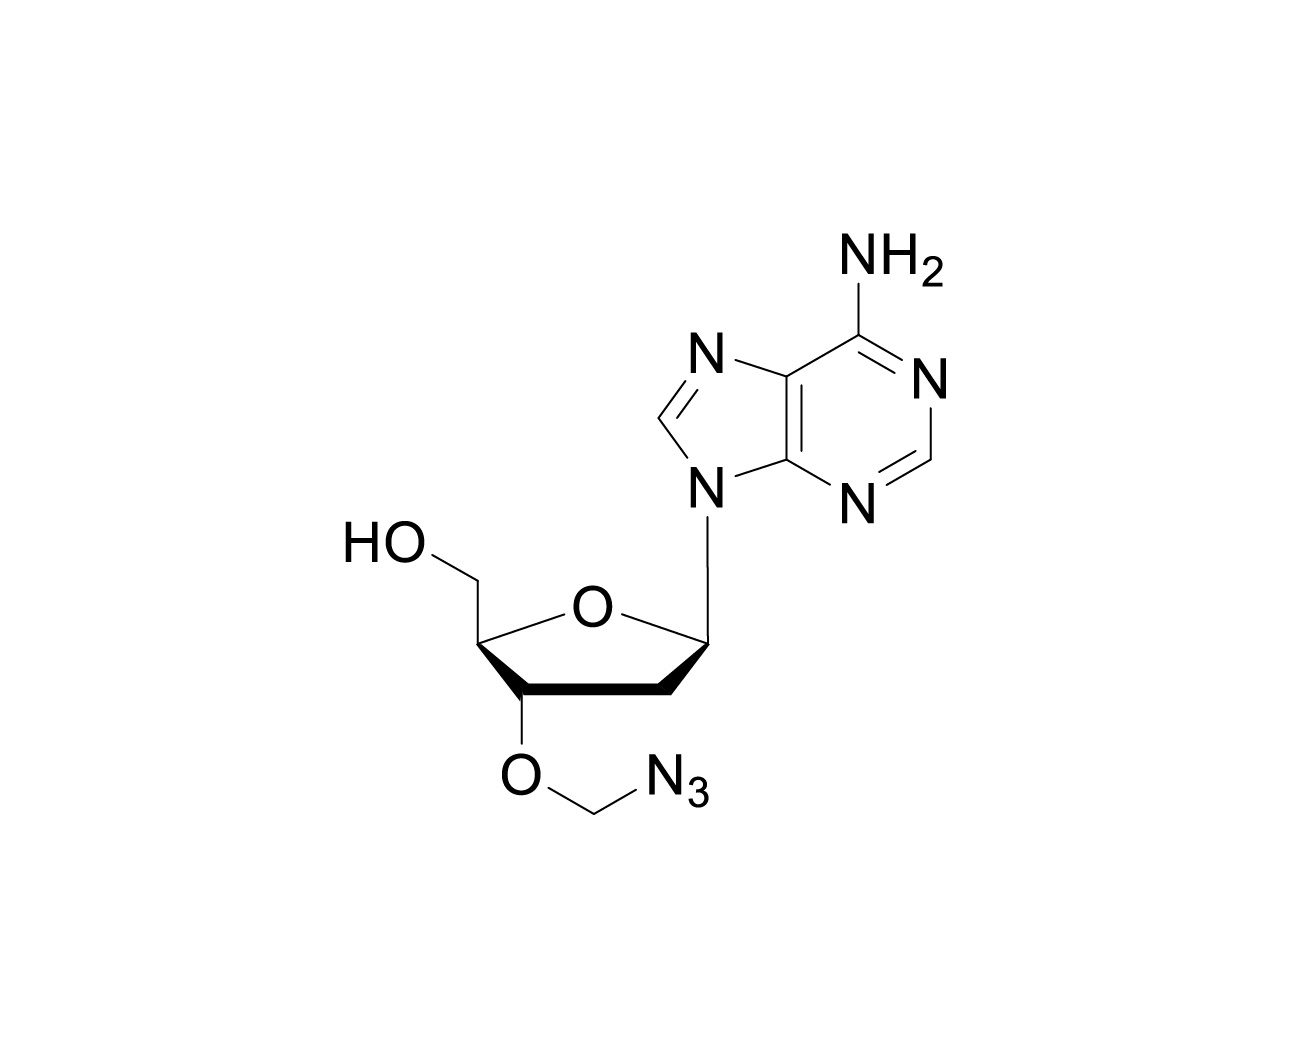 3'-O-azidomethylene-dA